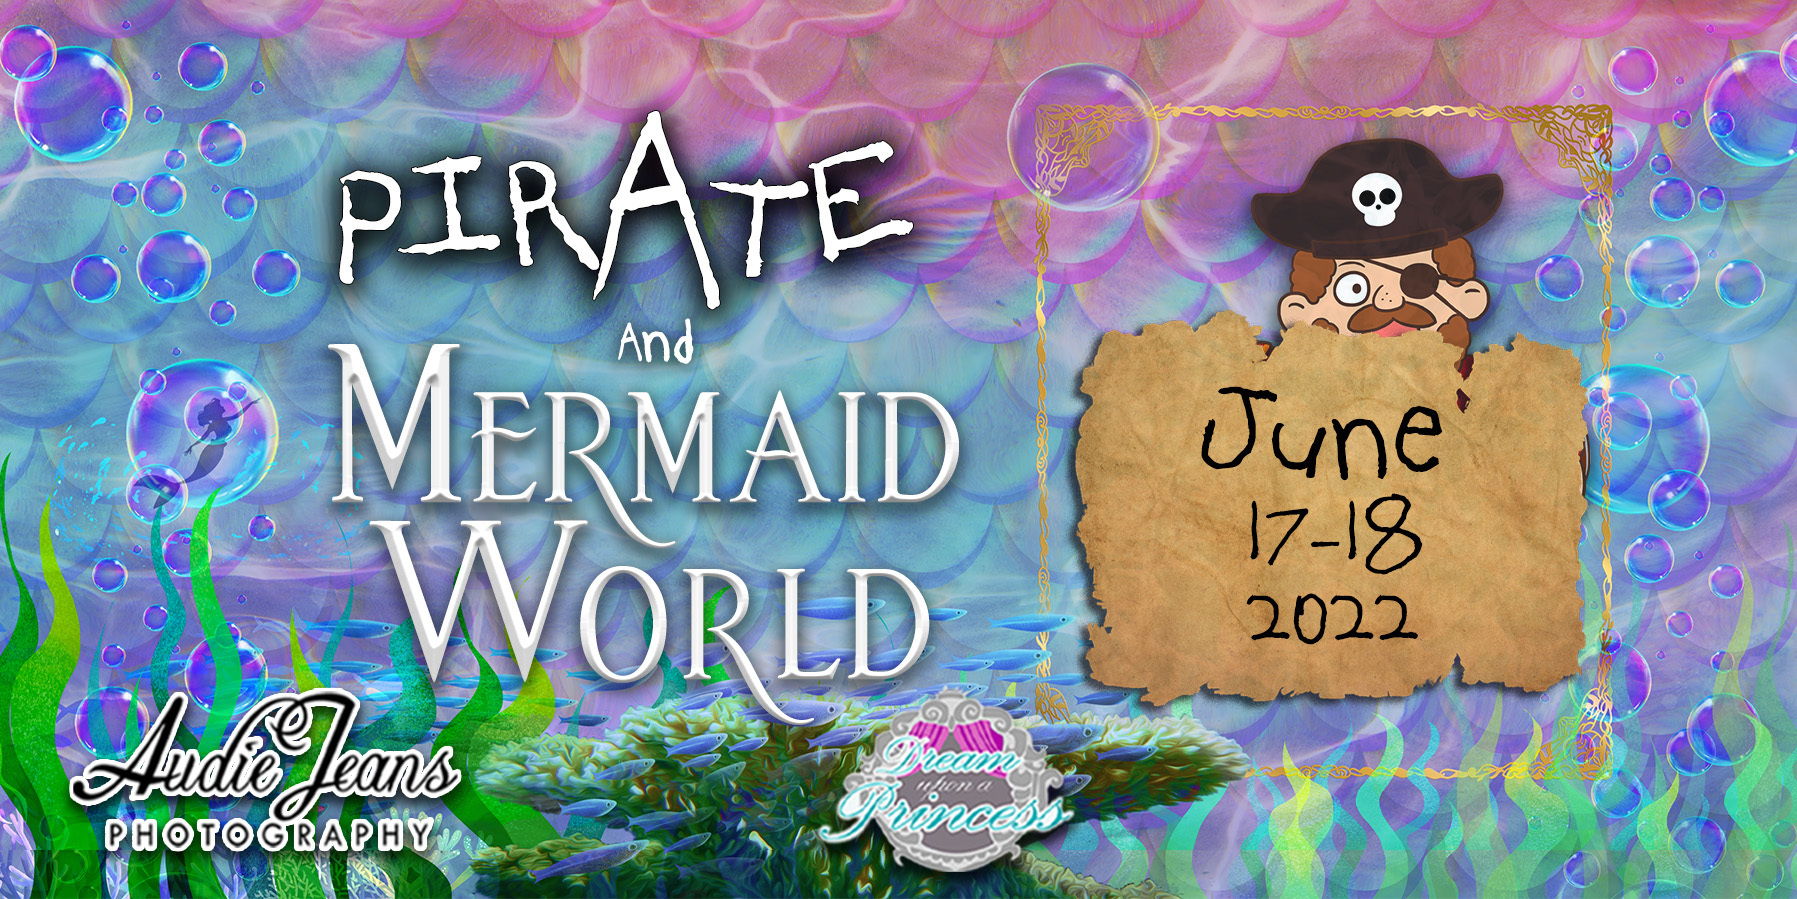 Mermaid and Pirate World, Casper, Wyoming, United States